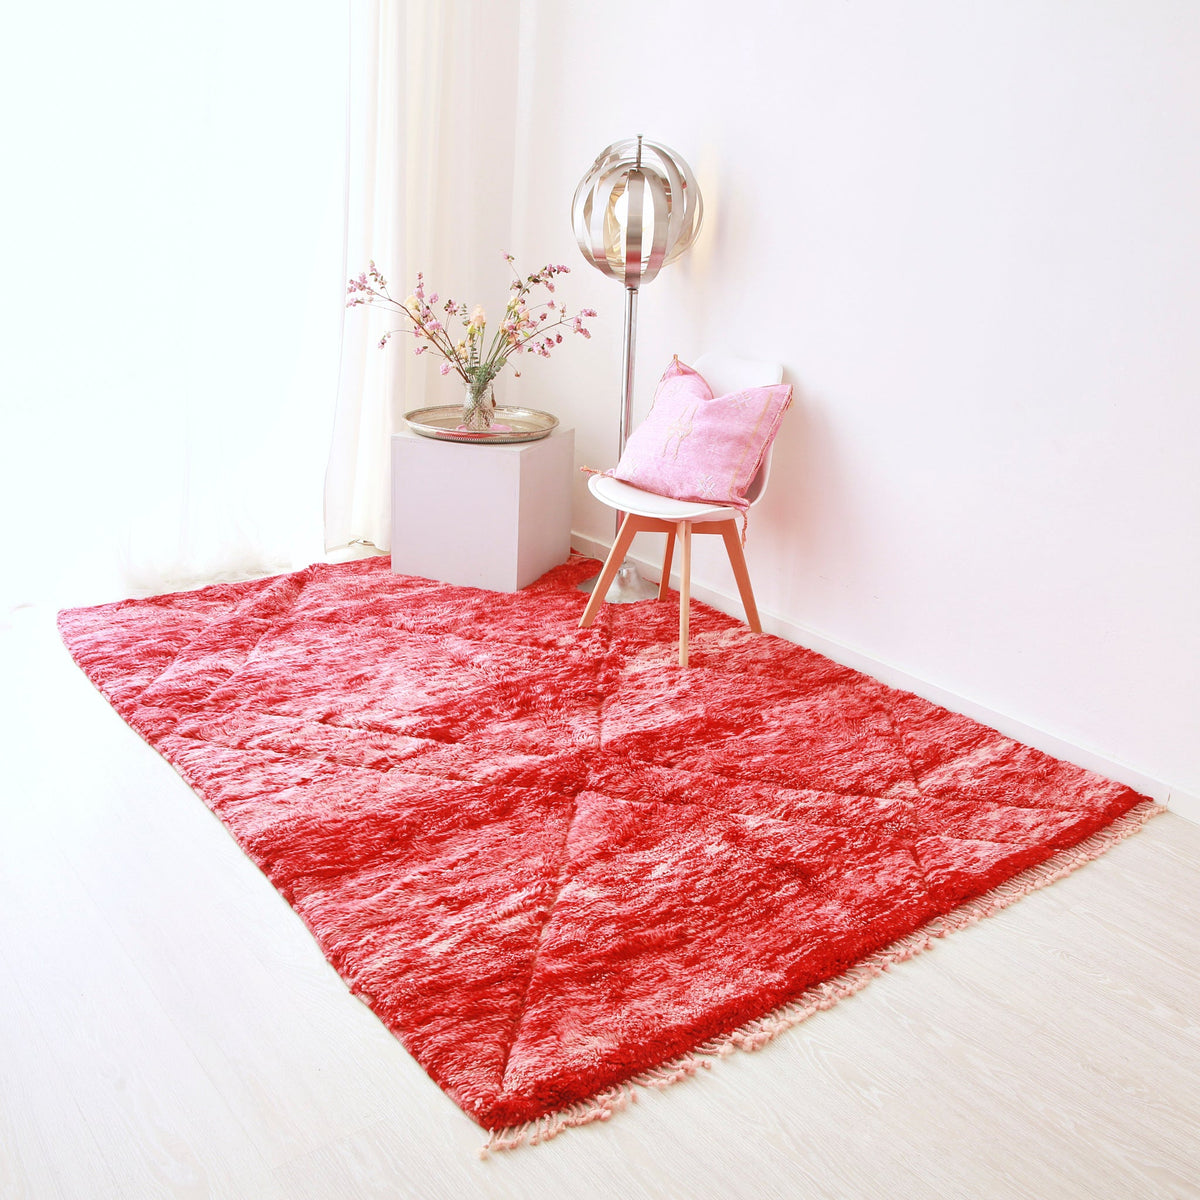 tappeto beni mrirt realizzato a mano con lana rossa disteso sul pavimento.sul tappeto sono presenti una lampanda stile anni 70, una composizione floreale e una sedia con un cuscino rosa in sabra